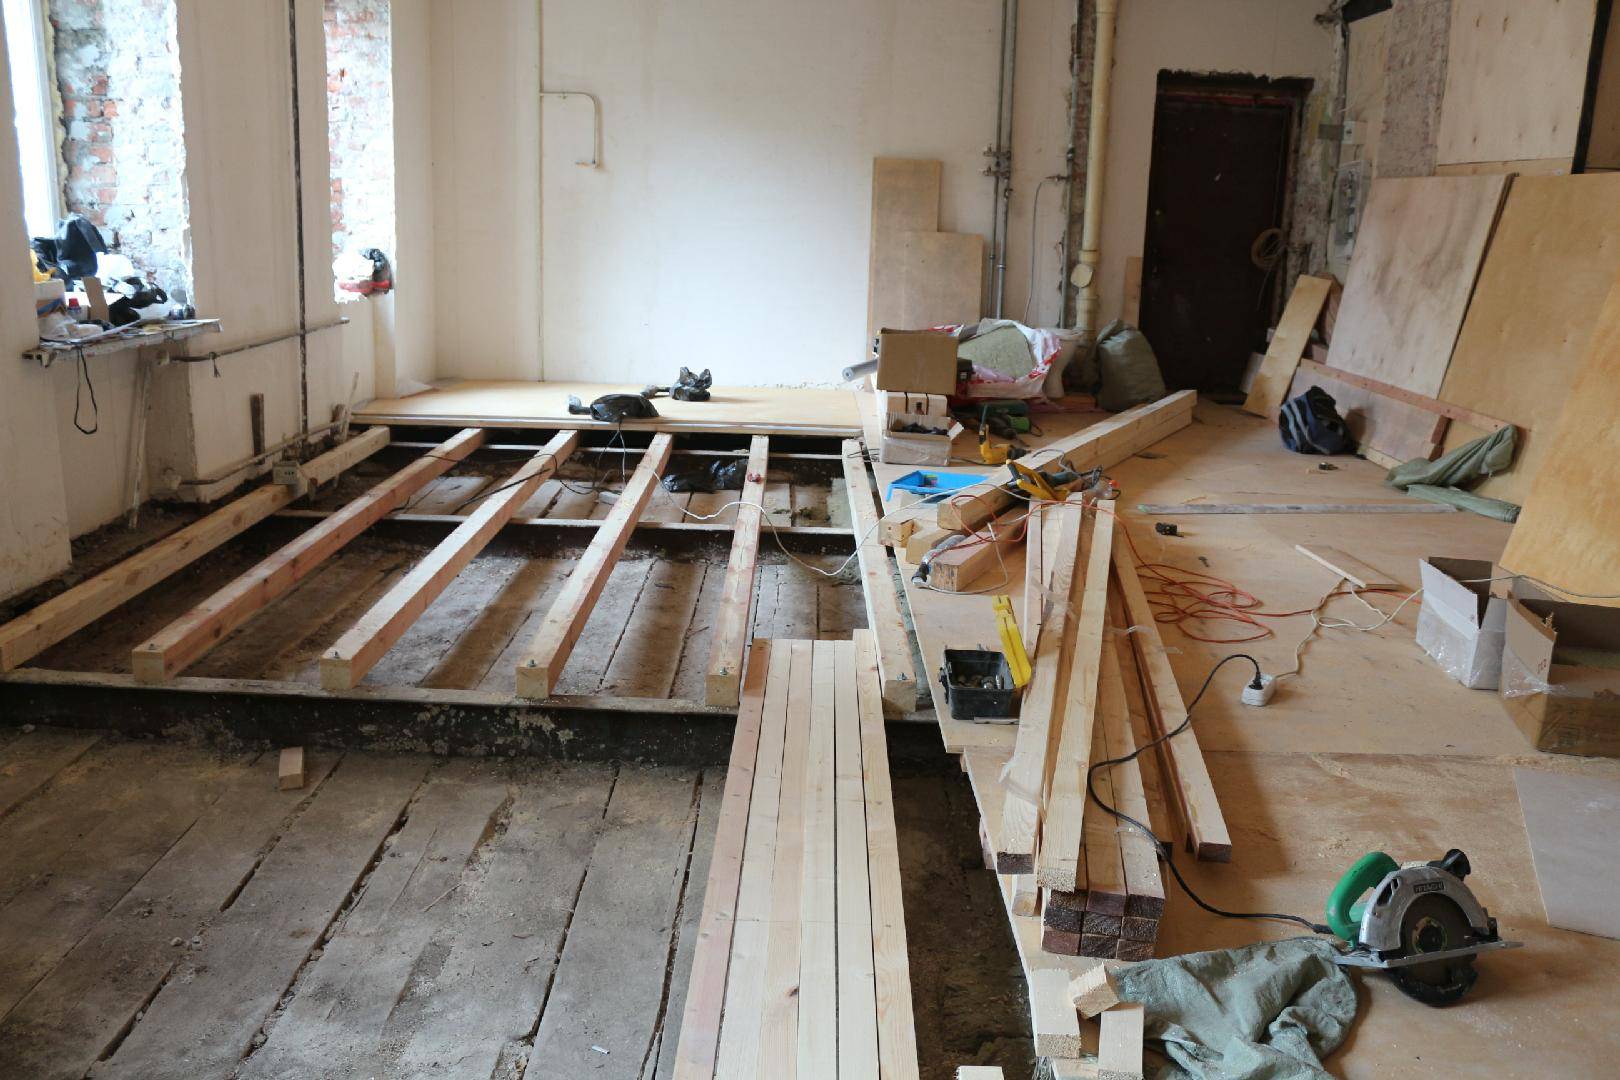 Ремонтируем полы на деревянных лагах в доме своими руками- обзор +видео